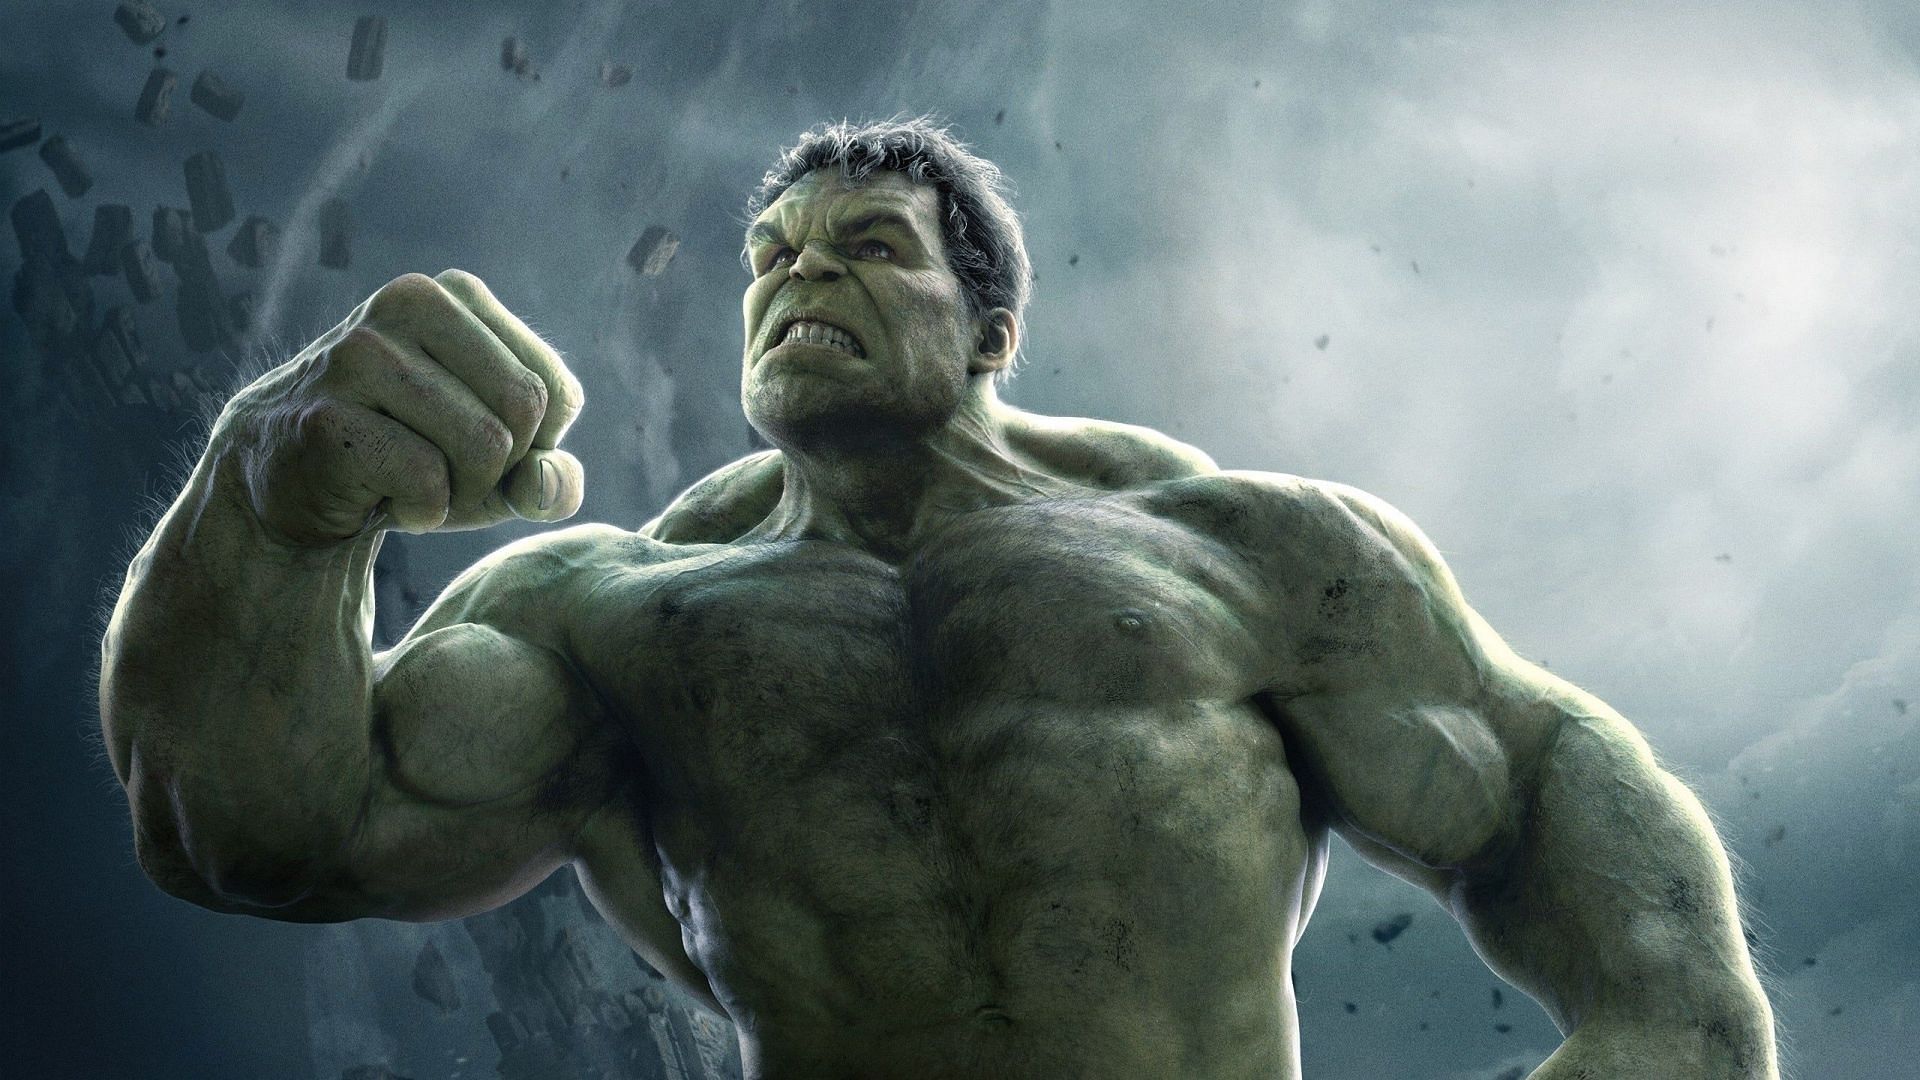 Hulk is truly the coolest Marvel Superhero. (Image via Marvel)